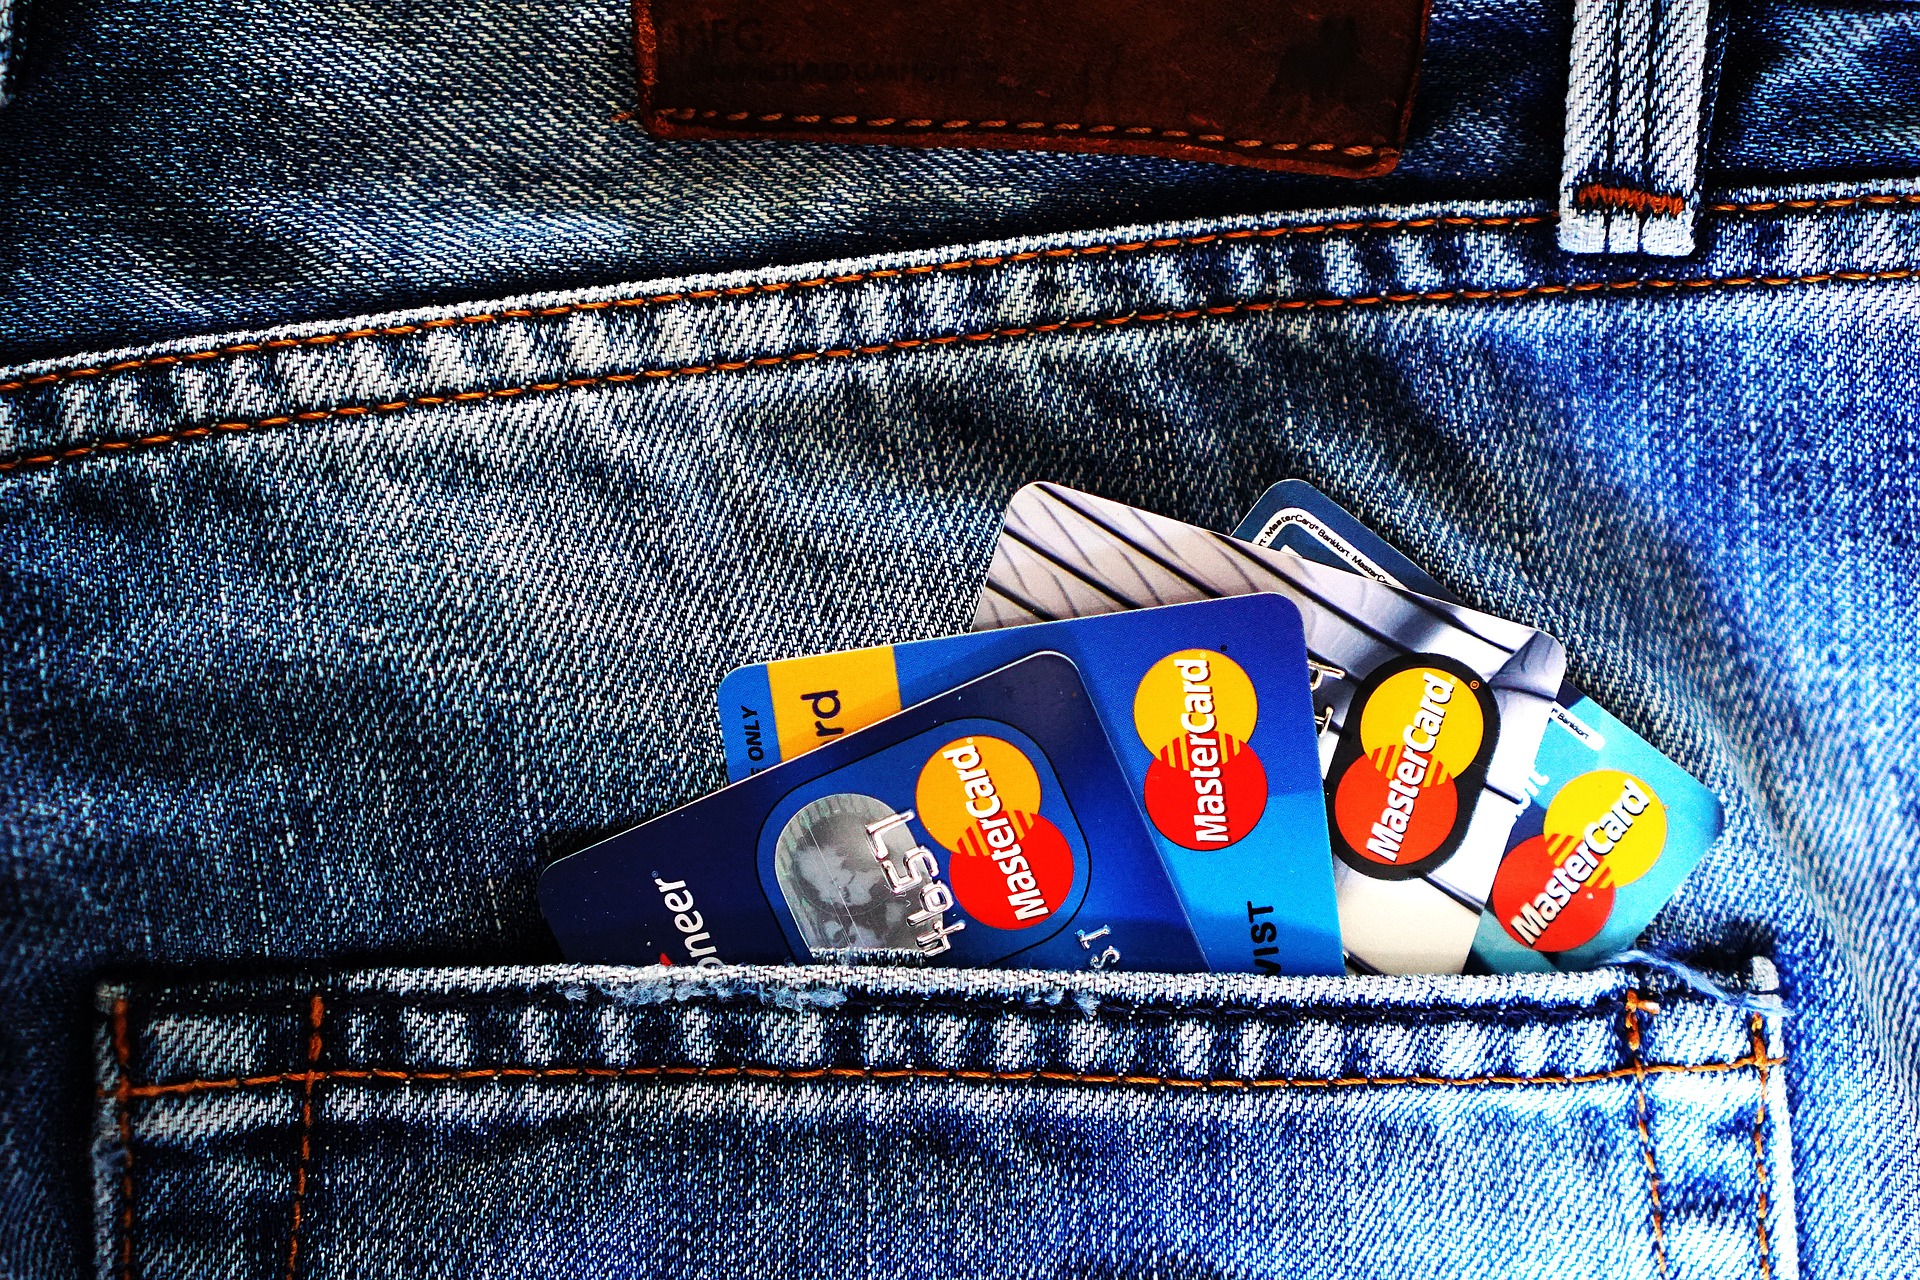 Karta debetowa – jak działa, jak korzystać i co warto wiedzieć?